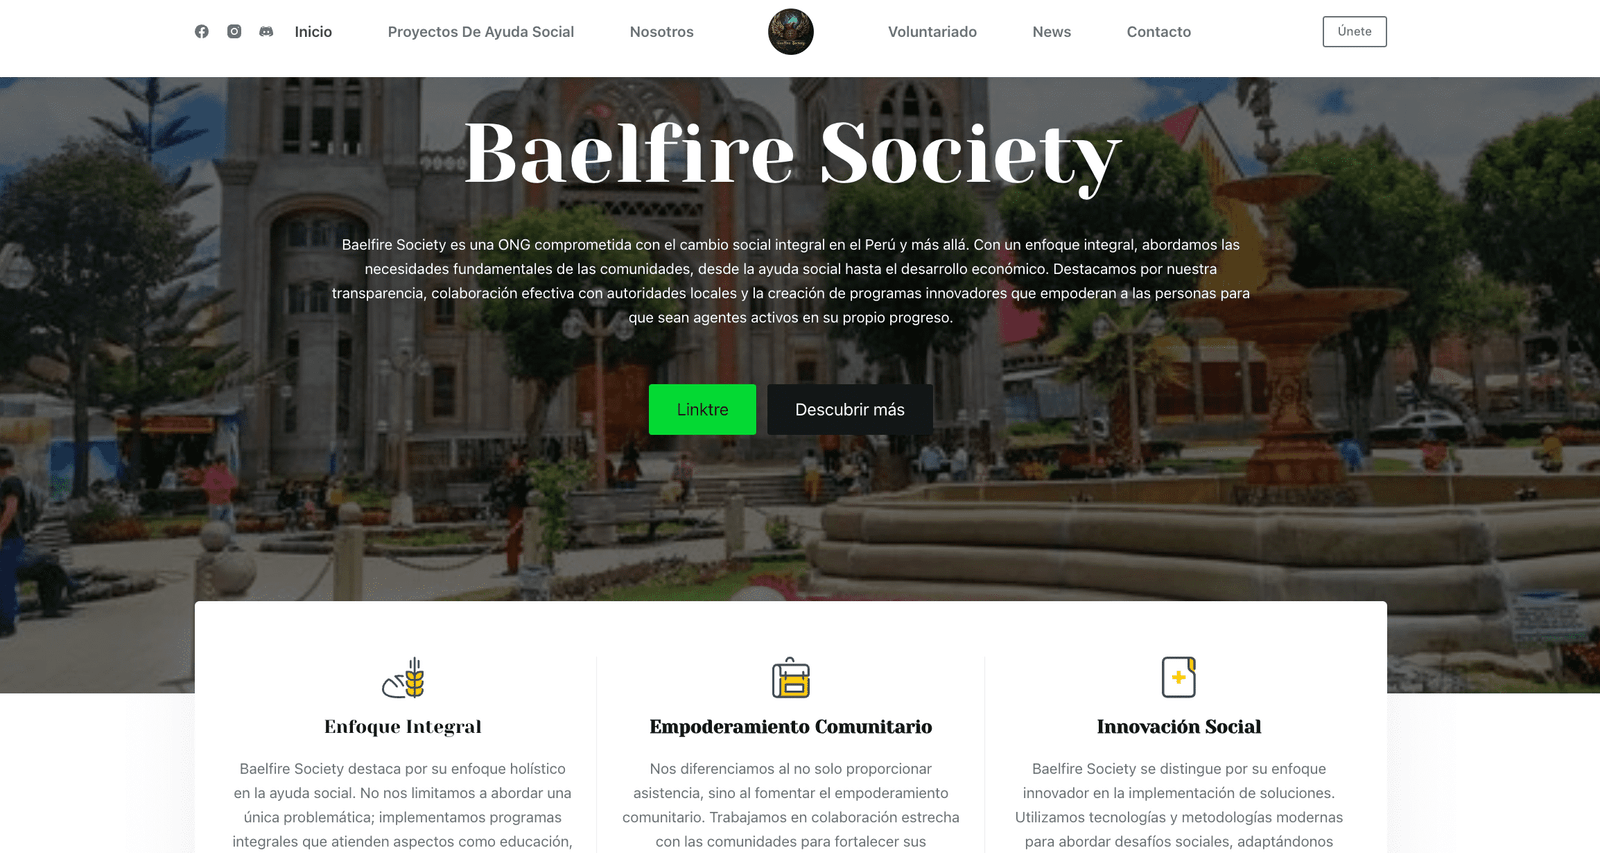 Baelfire Society